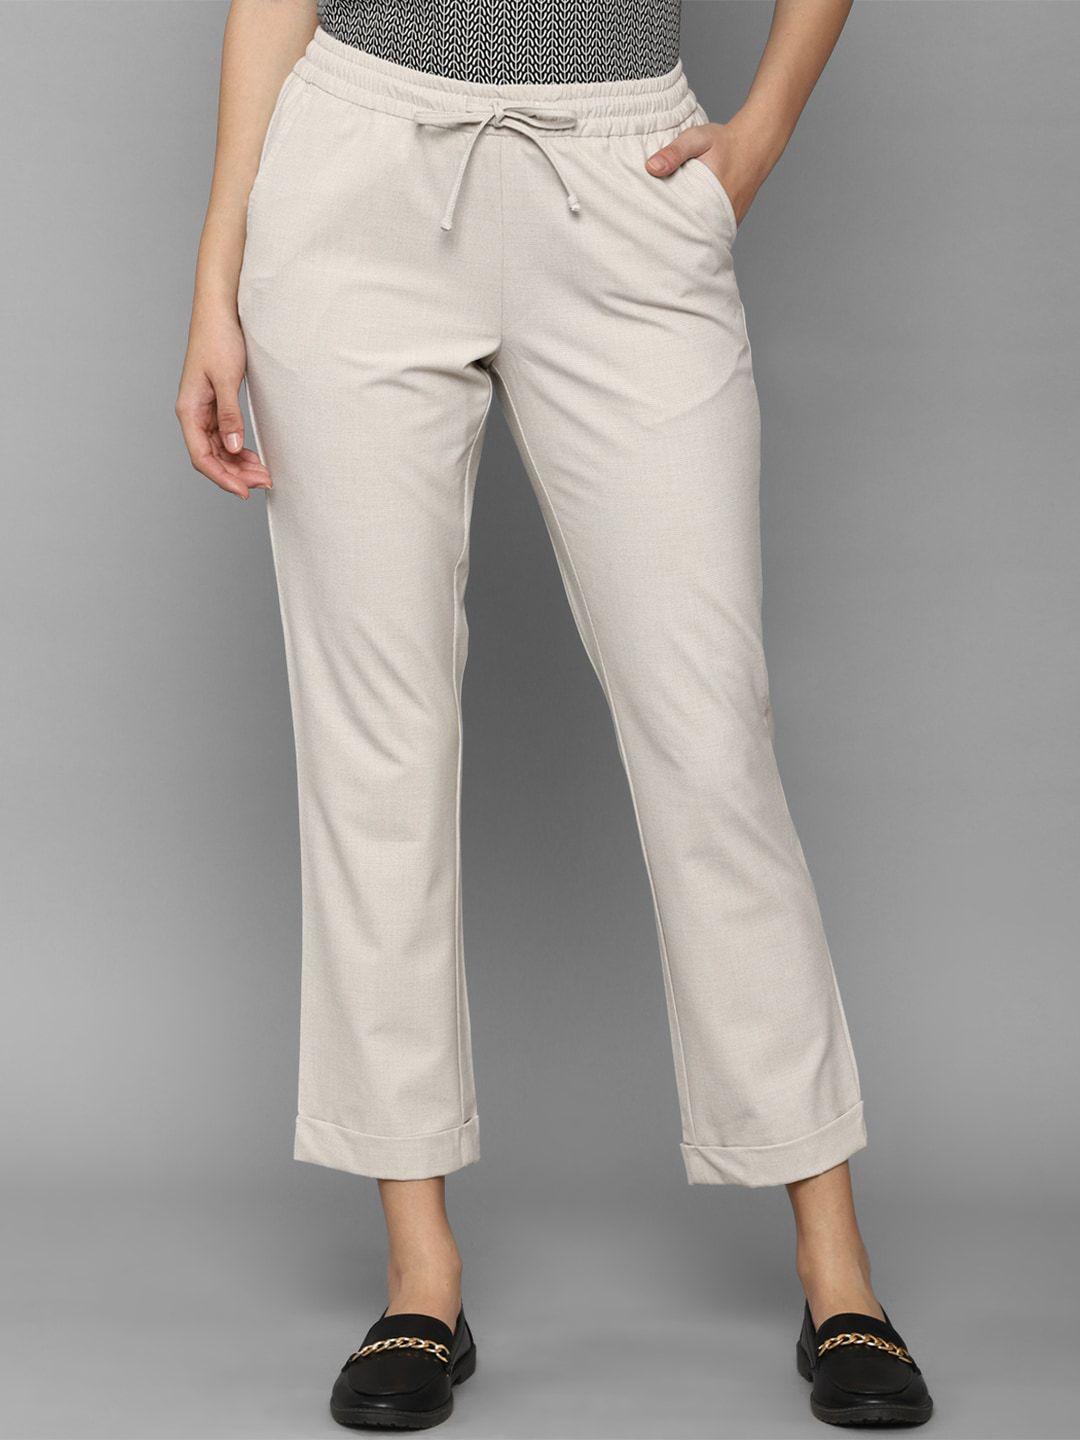 allen-solly-woman-women-grey-cropped-trouser